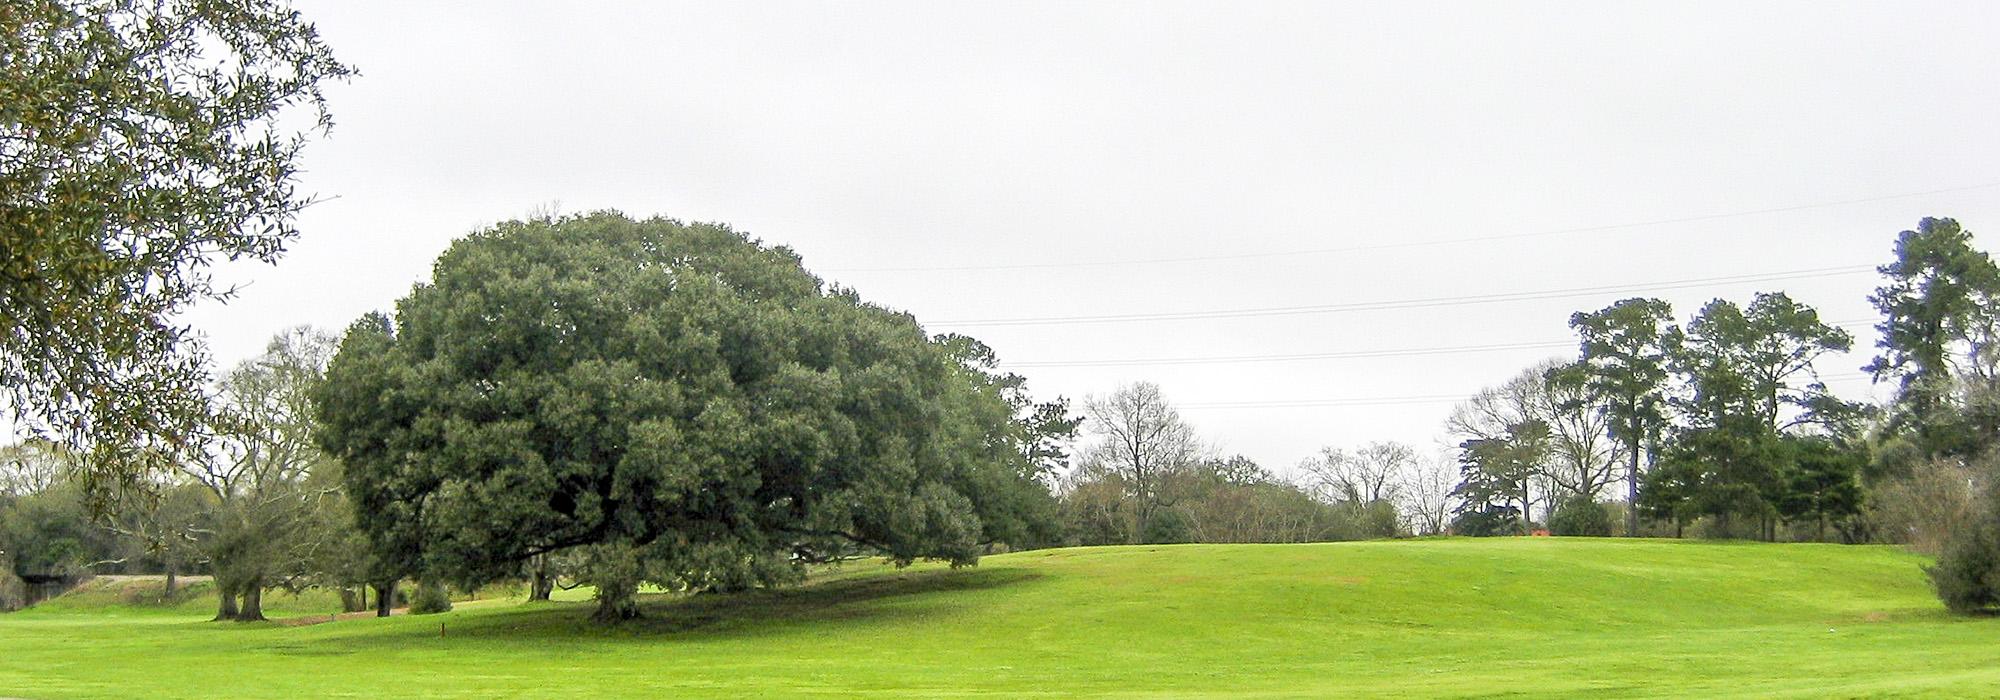 City Park Golf Course - Baton Rouge, Baton Rouge, LA